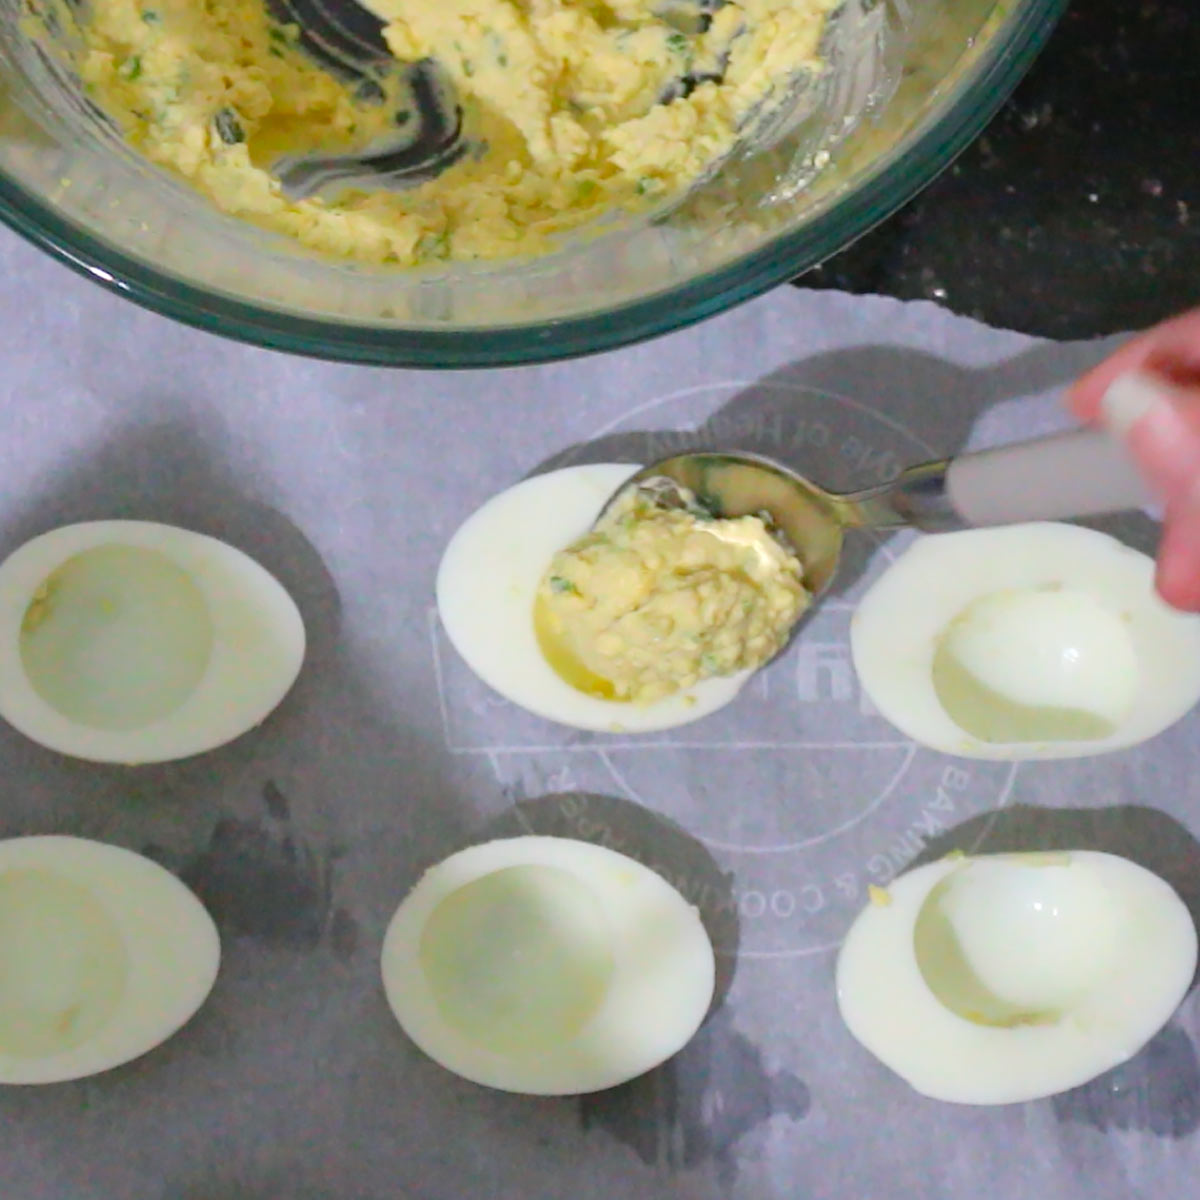 fill egg white halves with deviled egg filling